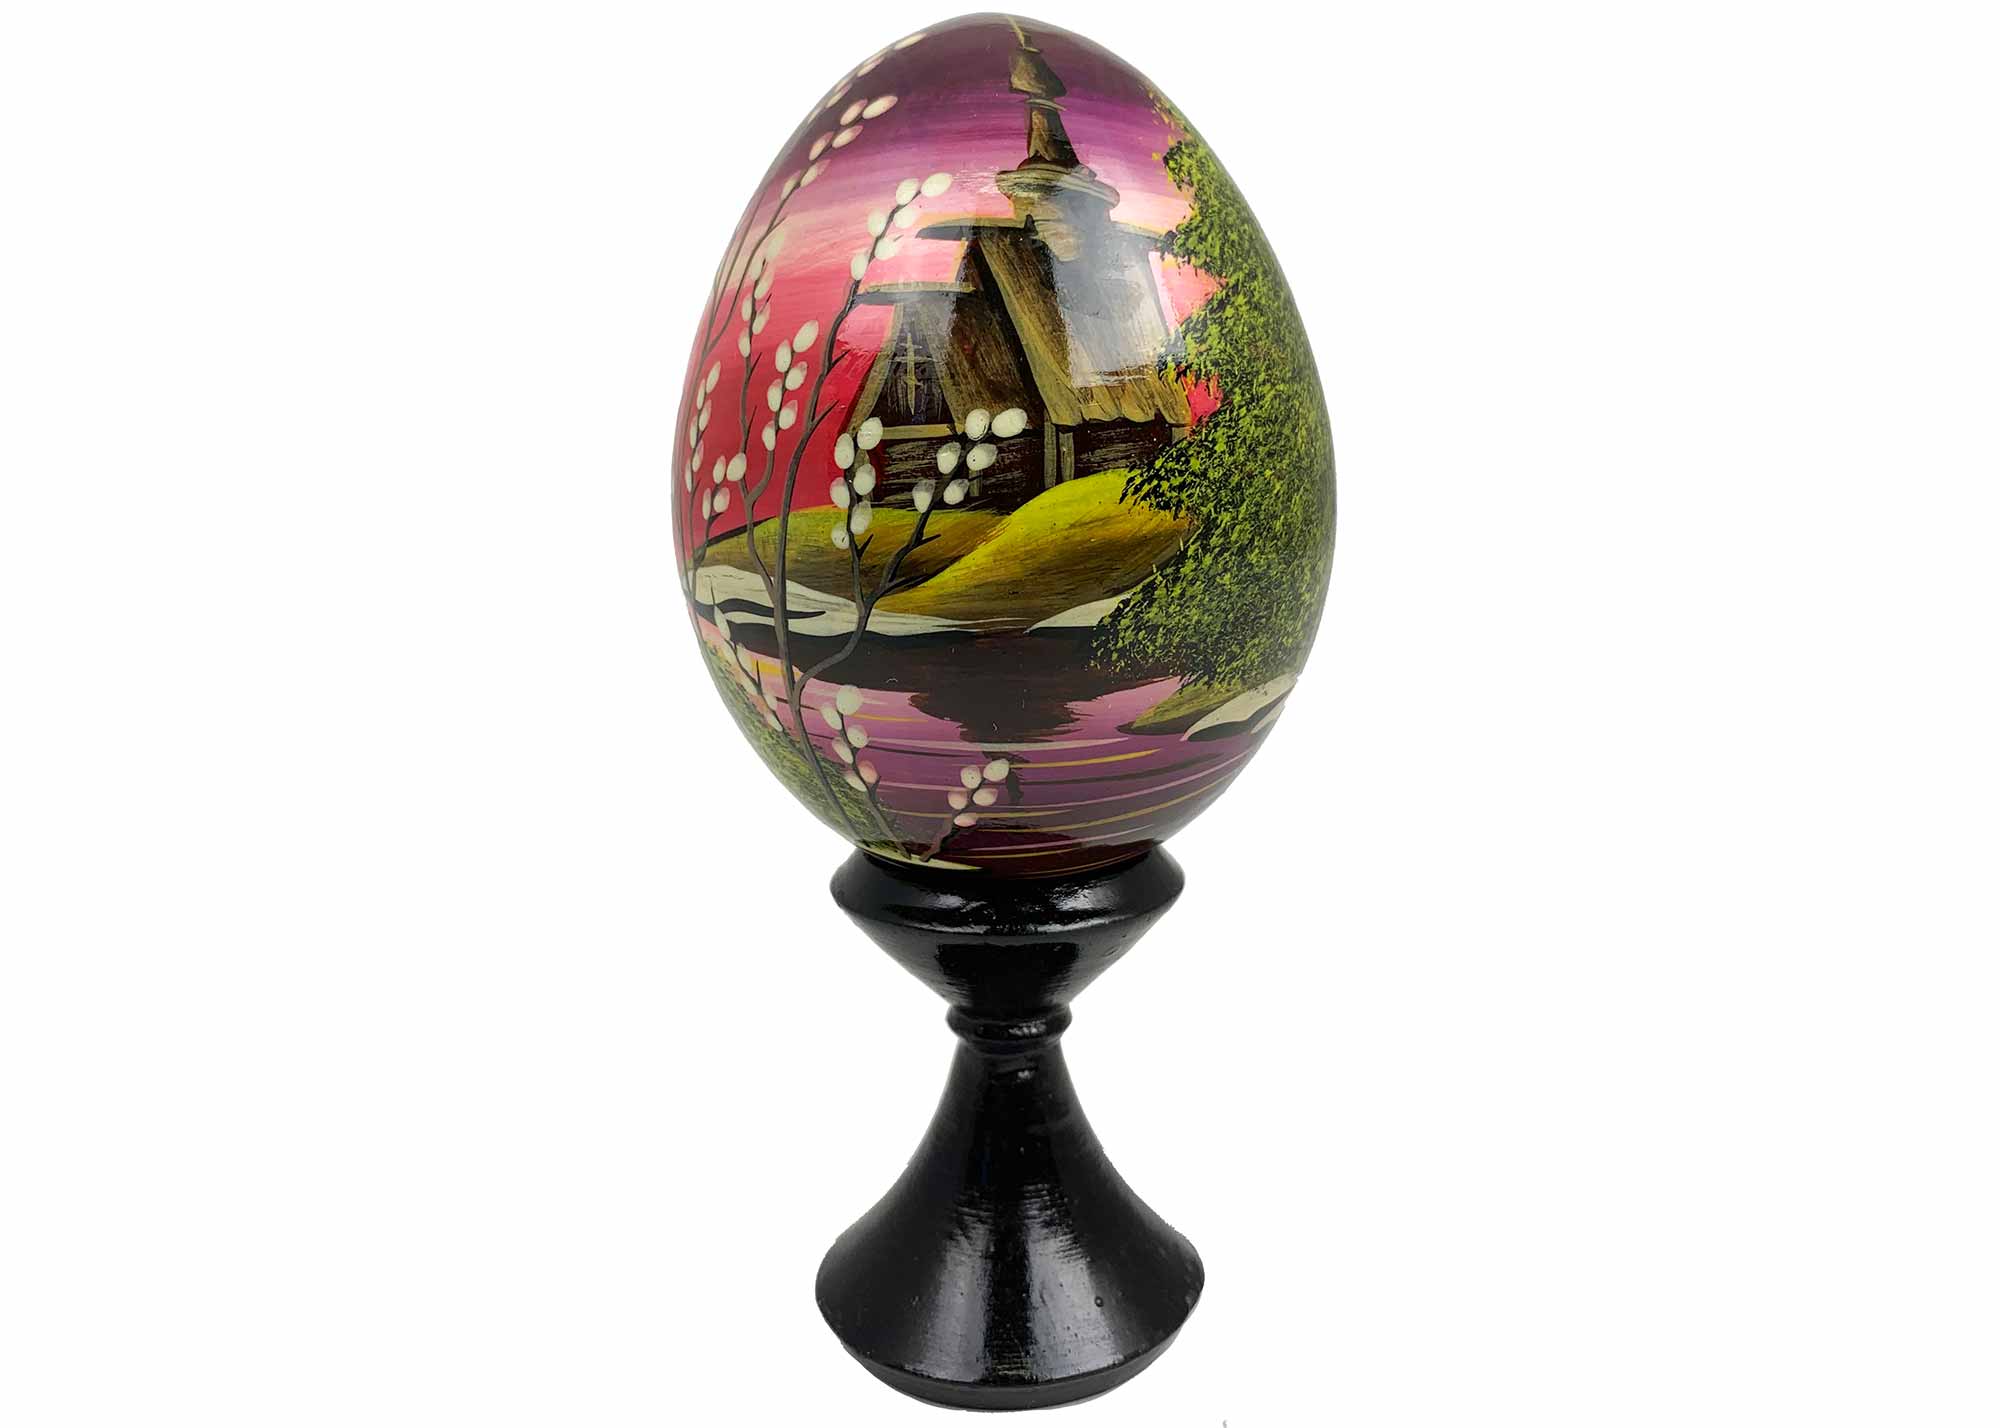 Buy Vintage Scenic Landscape Egg w/ Stand 2.75" at GoldenCockerel.com